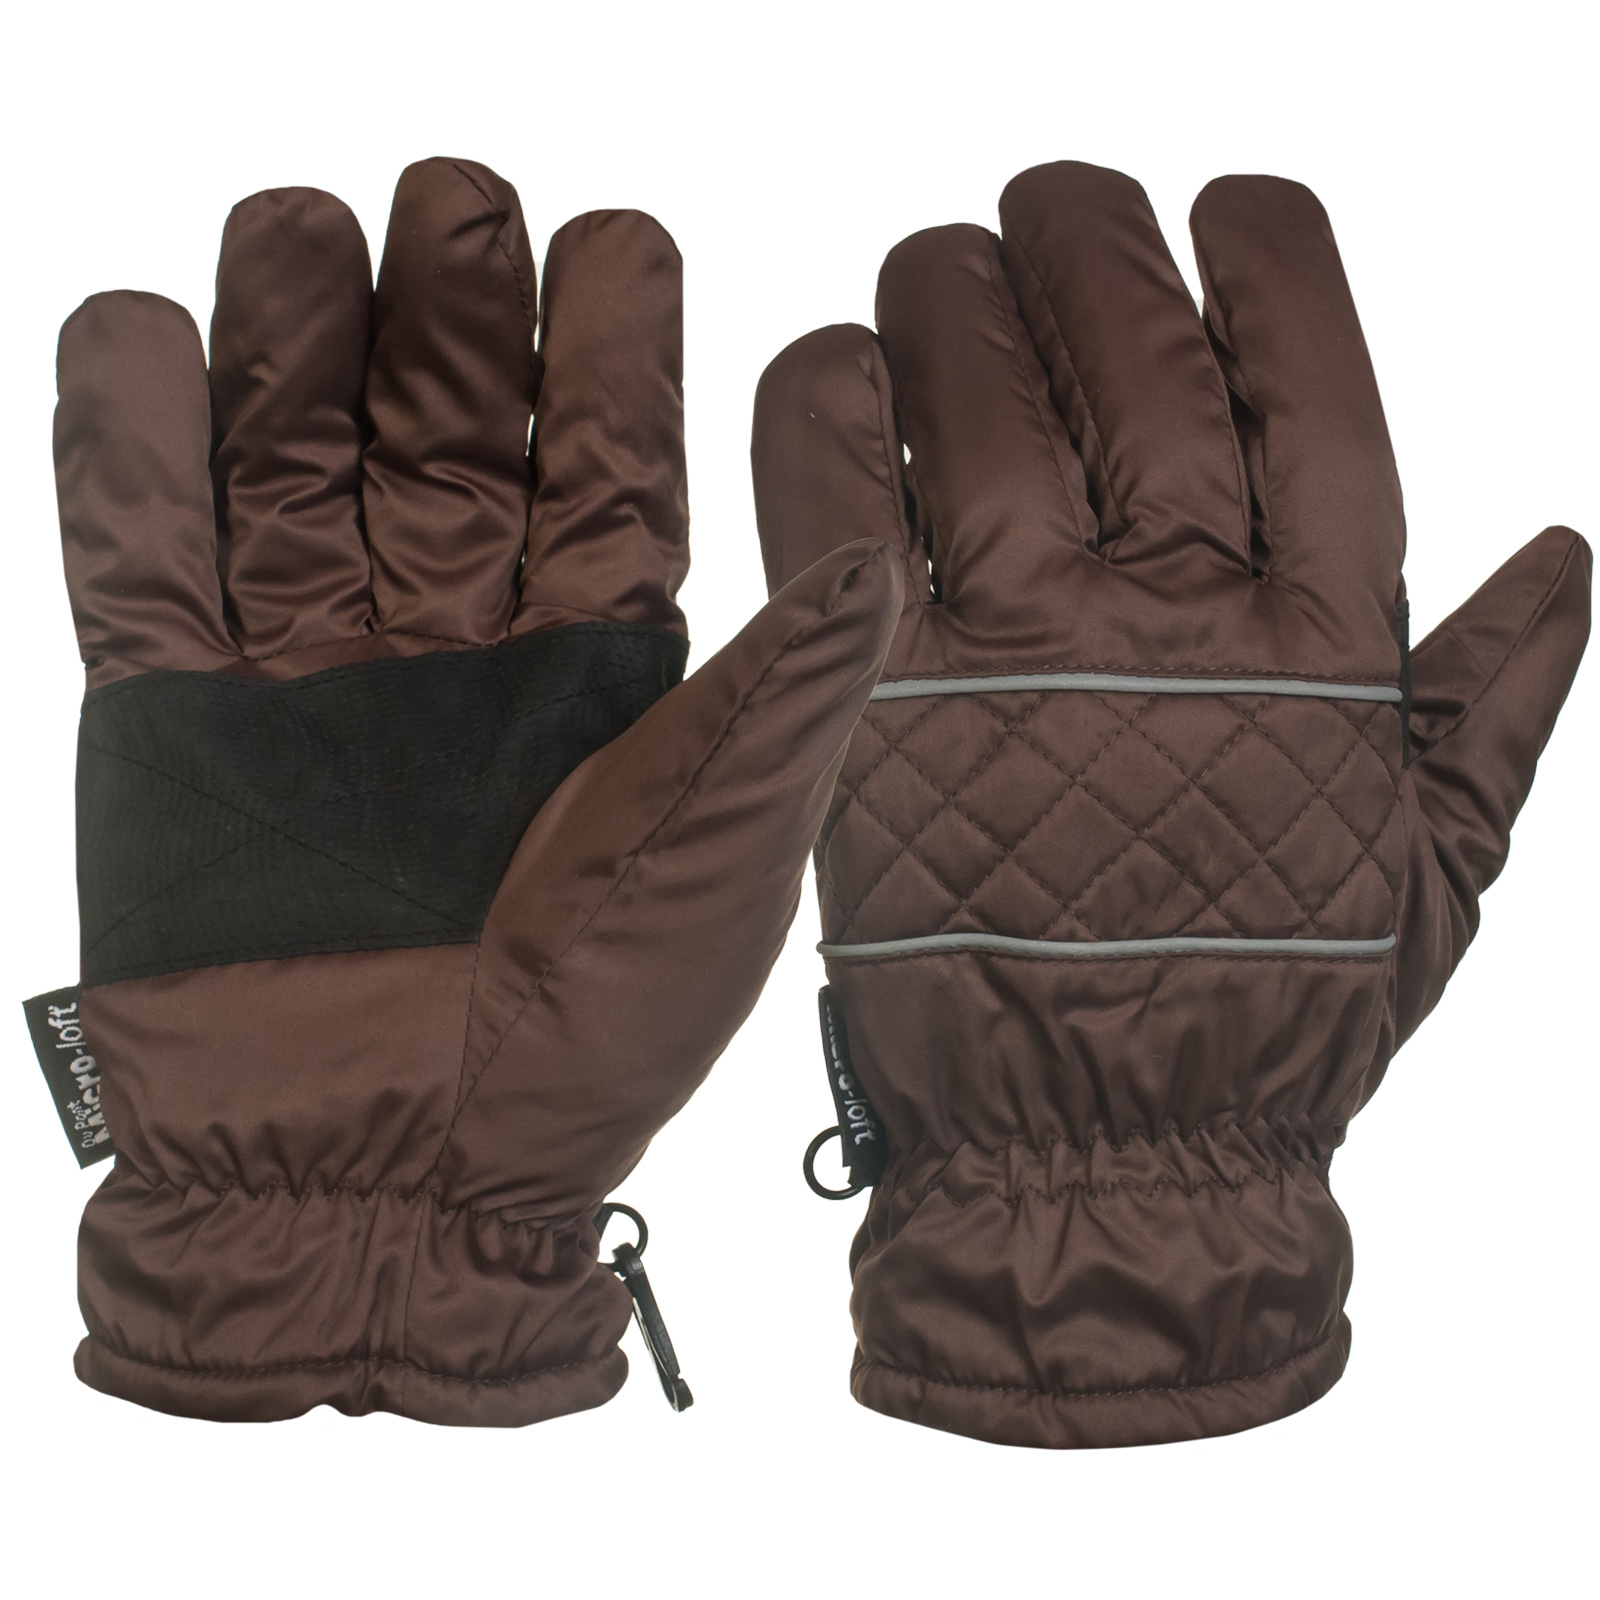 Утепленные коричневые перчатки с черными вставками на ладонях для спецоперации    - не продуваются, не мокнут, запястье с фиксатором №107